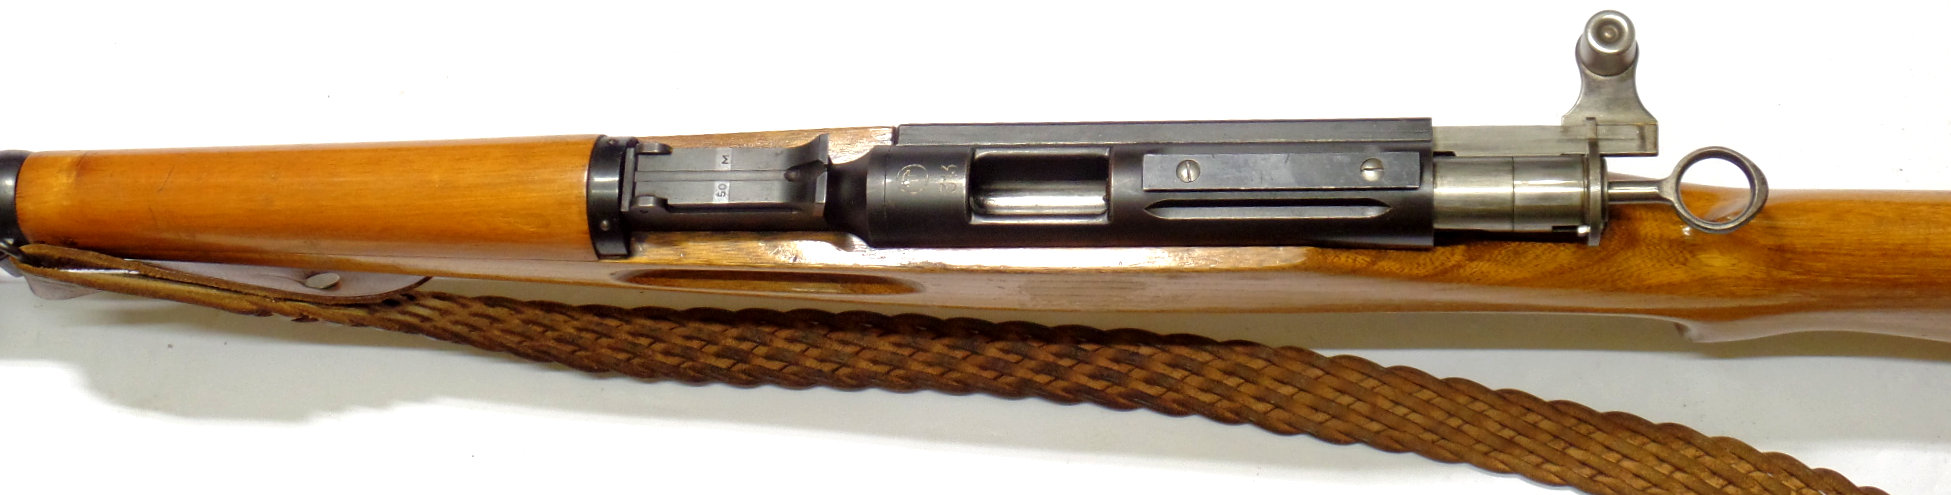 K31 Match Hammerli calibre 22LR